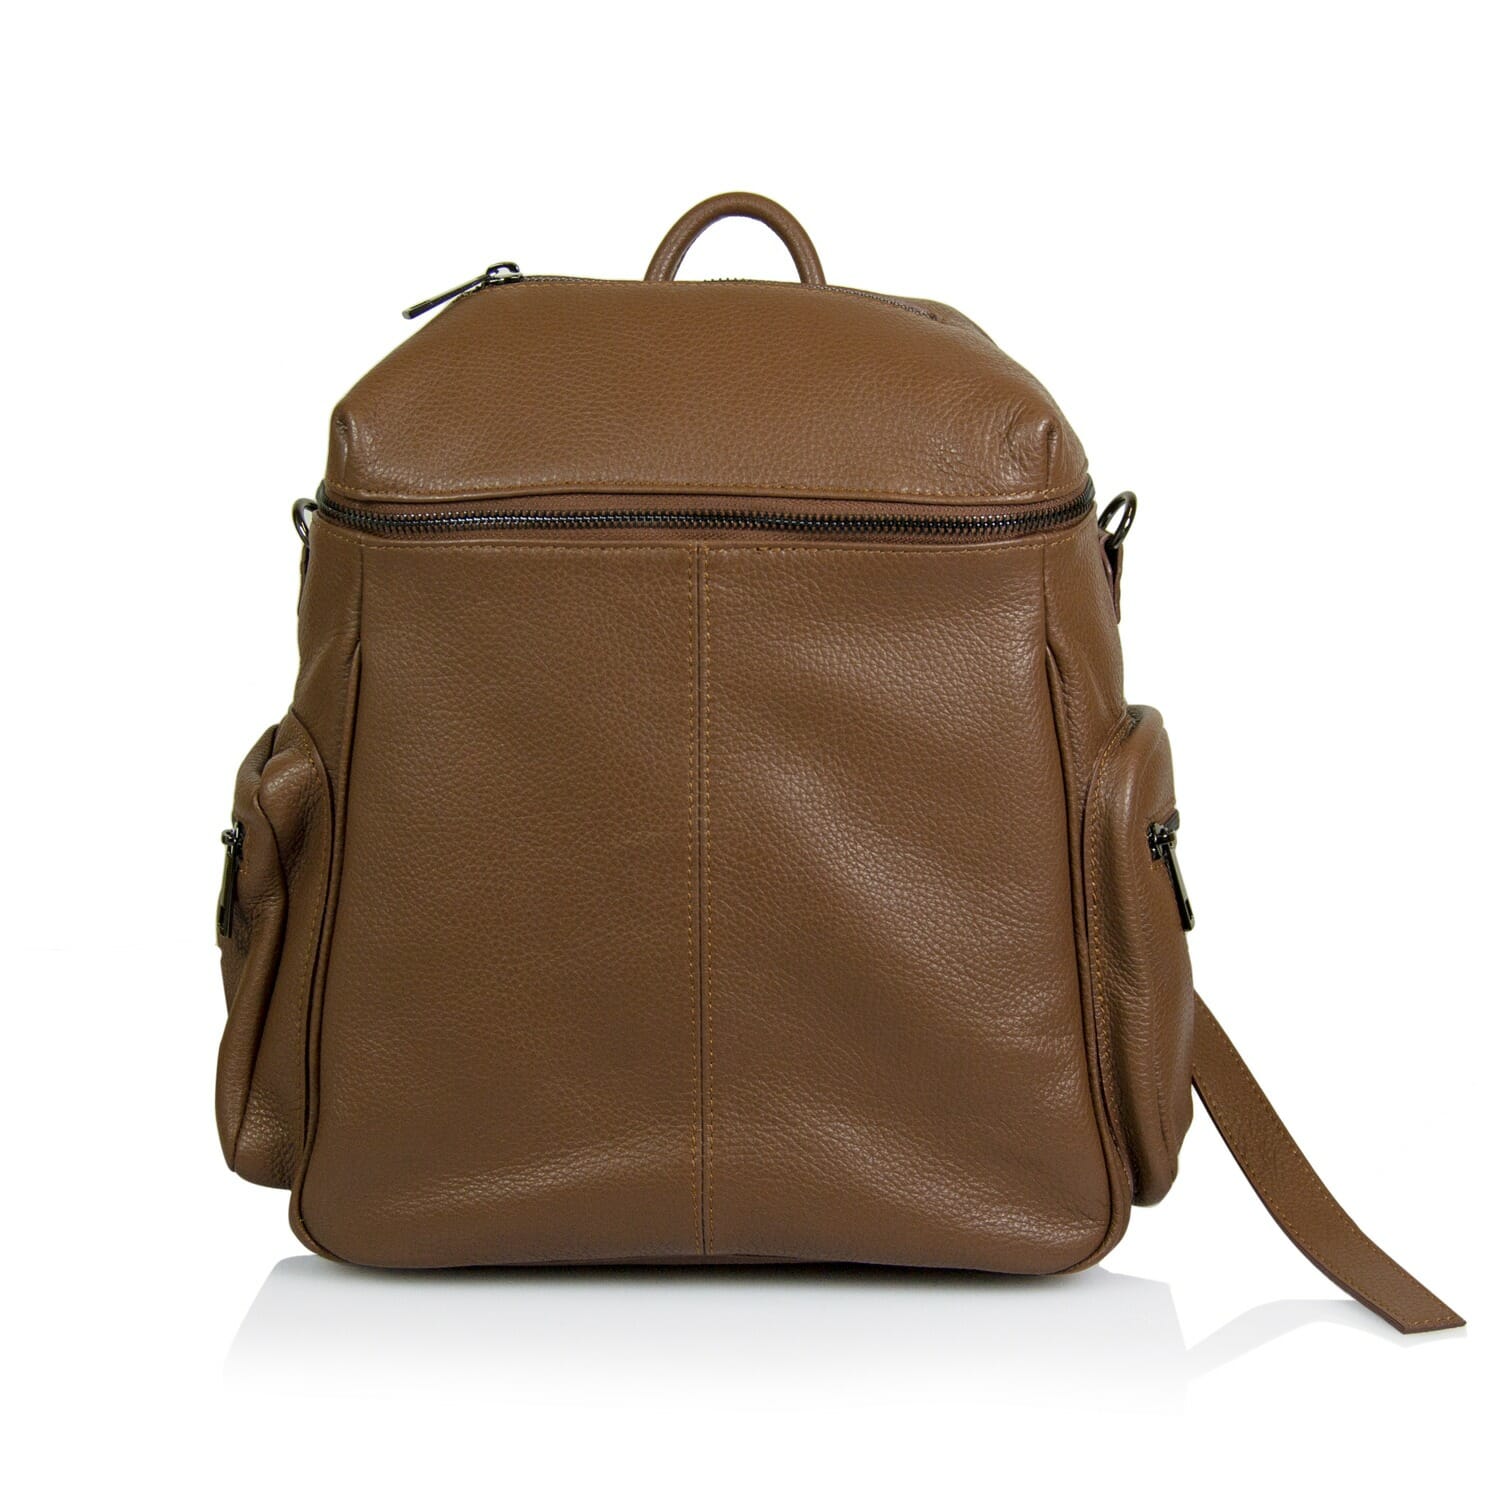 JULIENT - Celinka Dollar Leather Backpack - Main